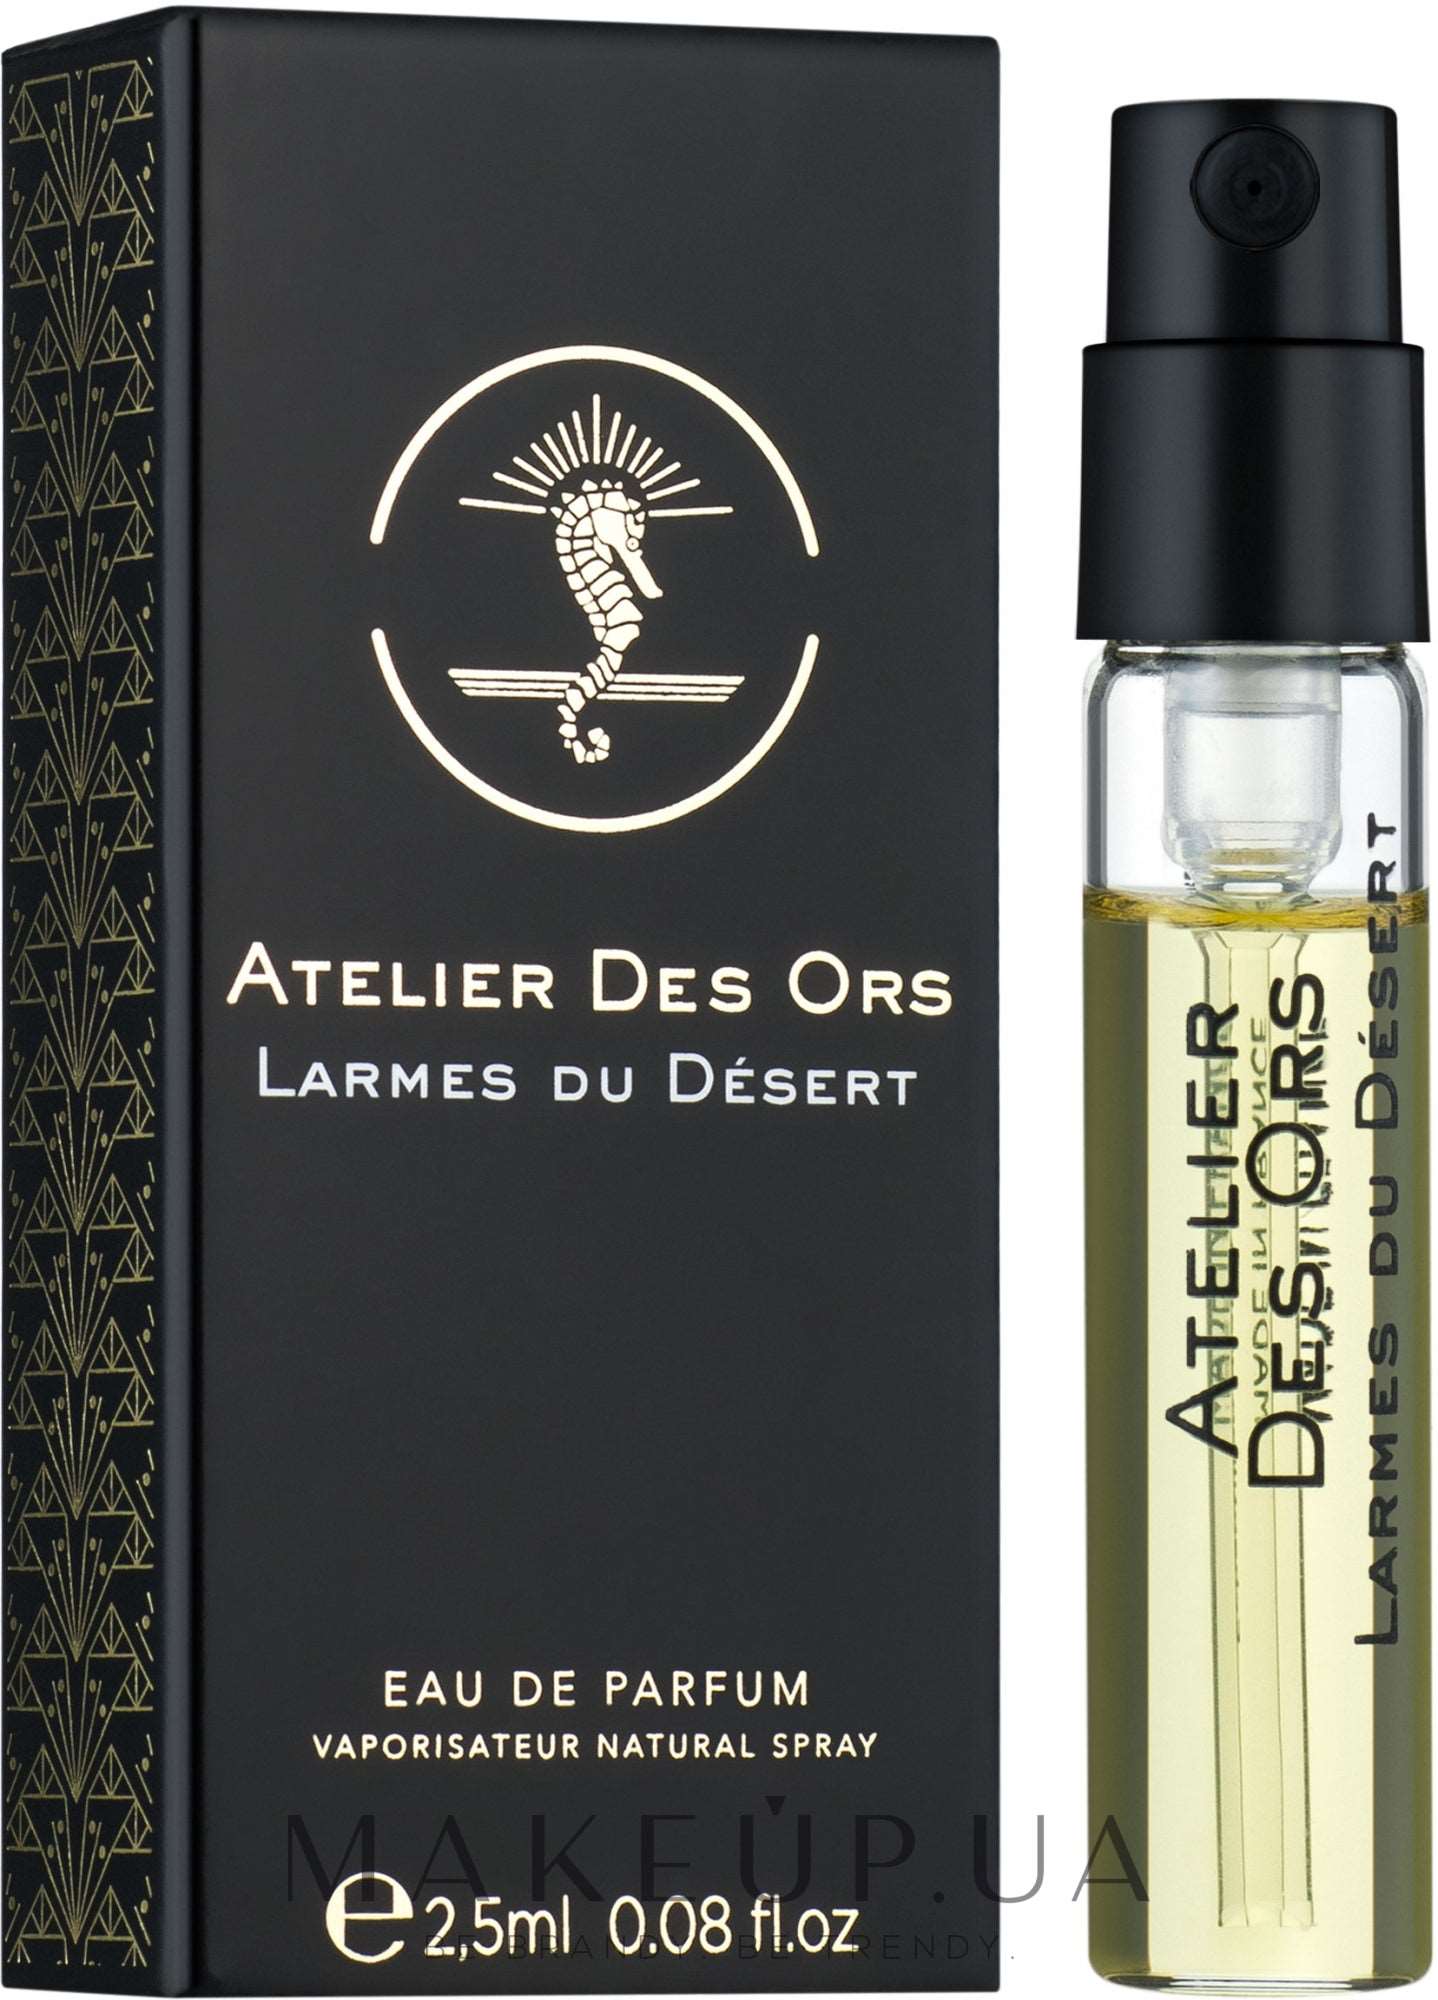 Atelier Des Ors Larmes du Desert 2.5 ml 0.08 fl. oz. Uradni vzorci parfumov